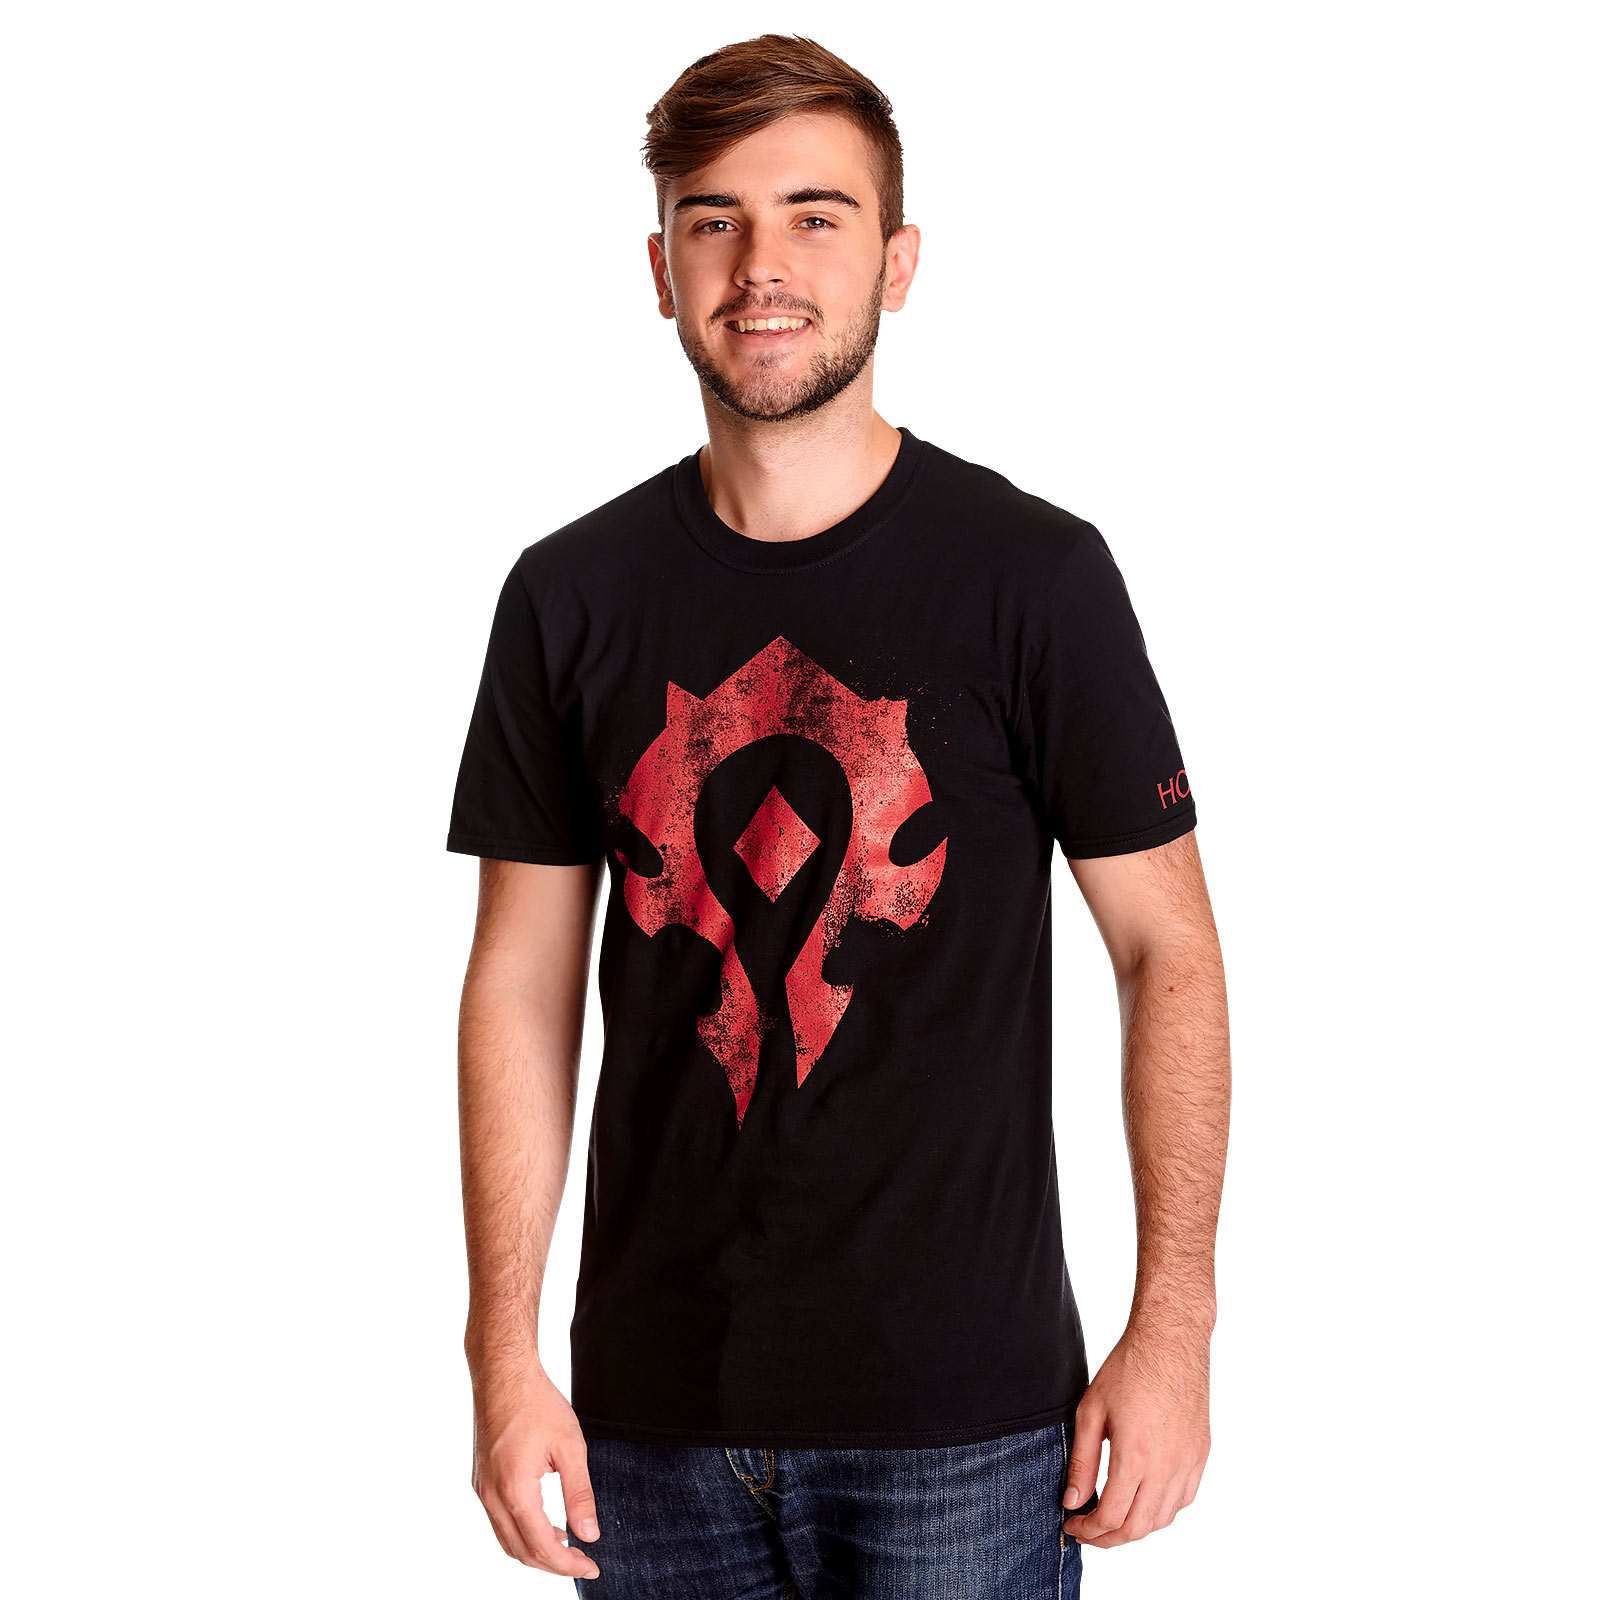 World of Warcraft - Horde Always T-Shirt schwarz